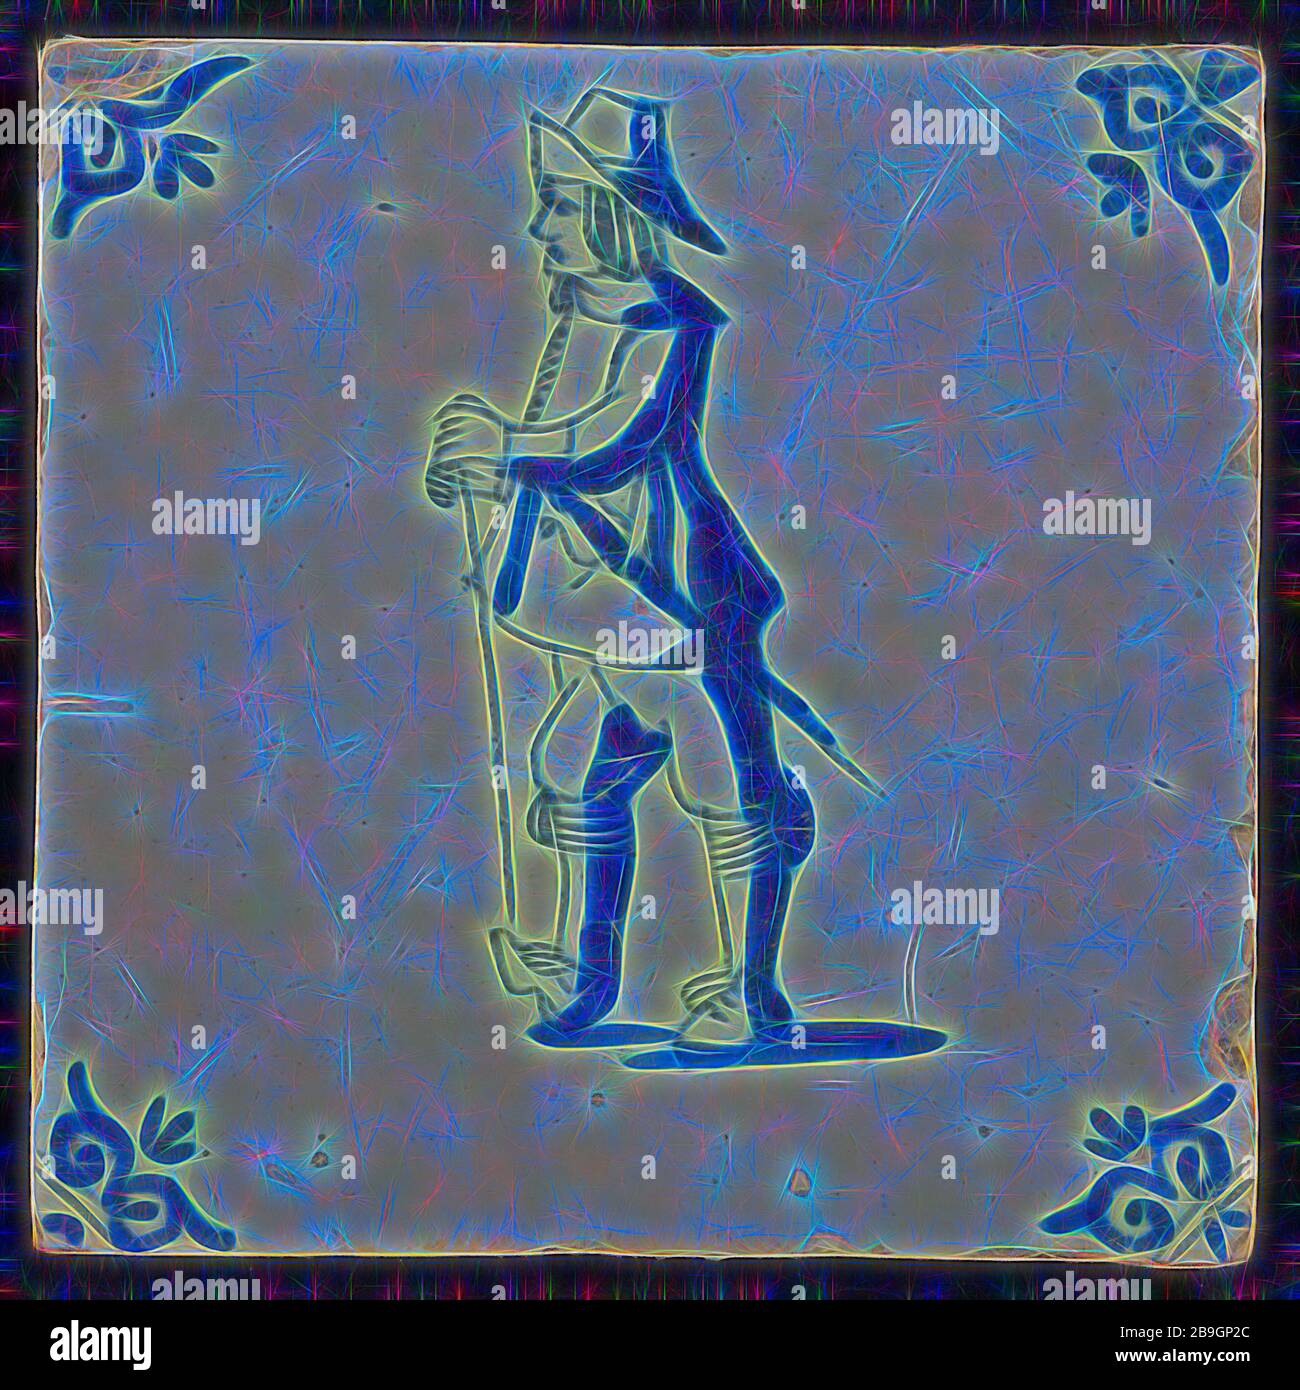 Weiße Fliesen mit blauen Krieger mit Schwert, Stock und Hut; Ecke Muster ox Kopf, wandfliese Kachel skulptur keramik Steingut glasiert, gebackene 2 x Glasierte lackiert Militaria Stockfoto